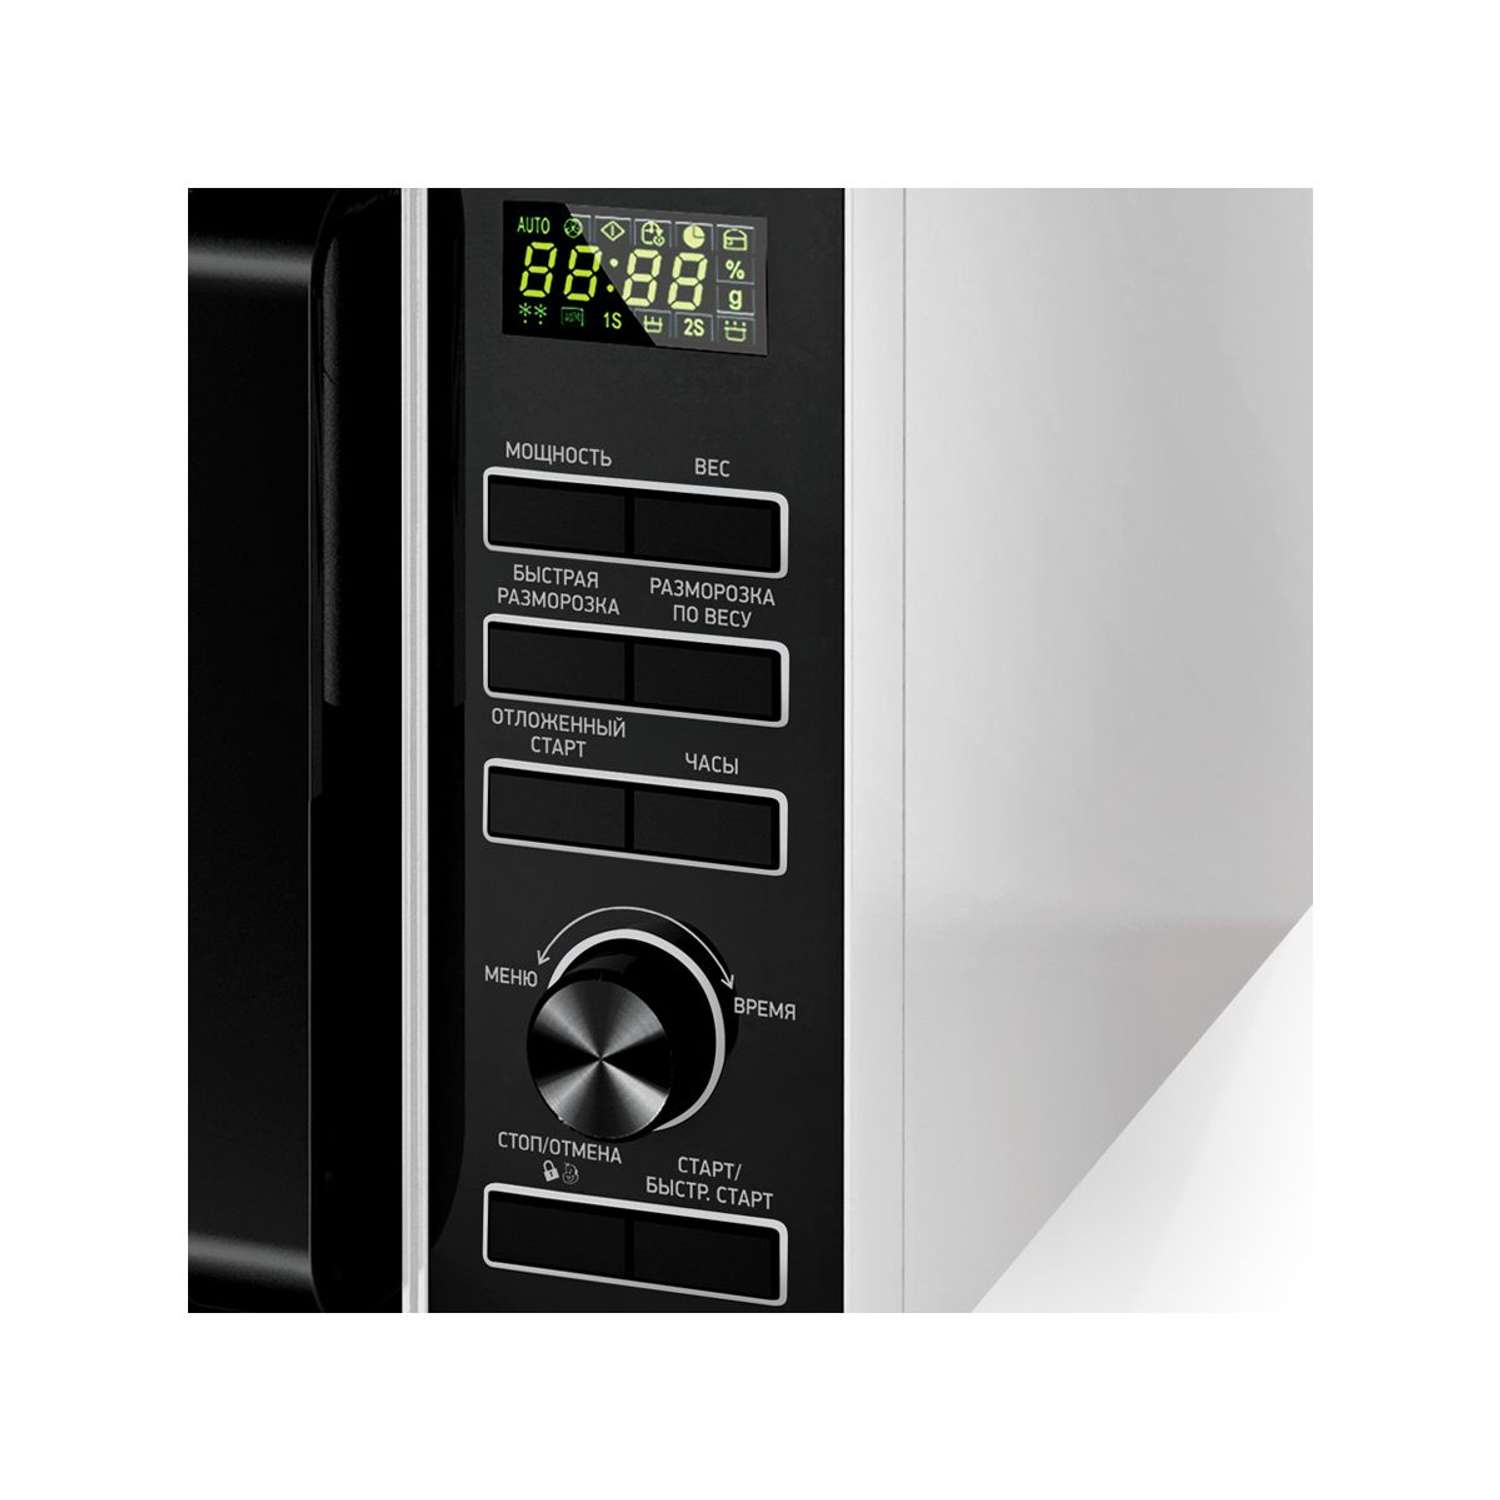 Микроволновая печь BBK 25MWS-970T WB белый/черный объем 25 л мощность 900 Вт электронное управление автоменю - фото 3